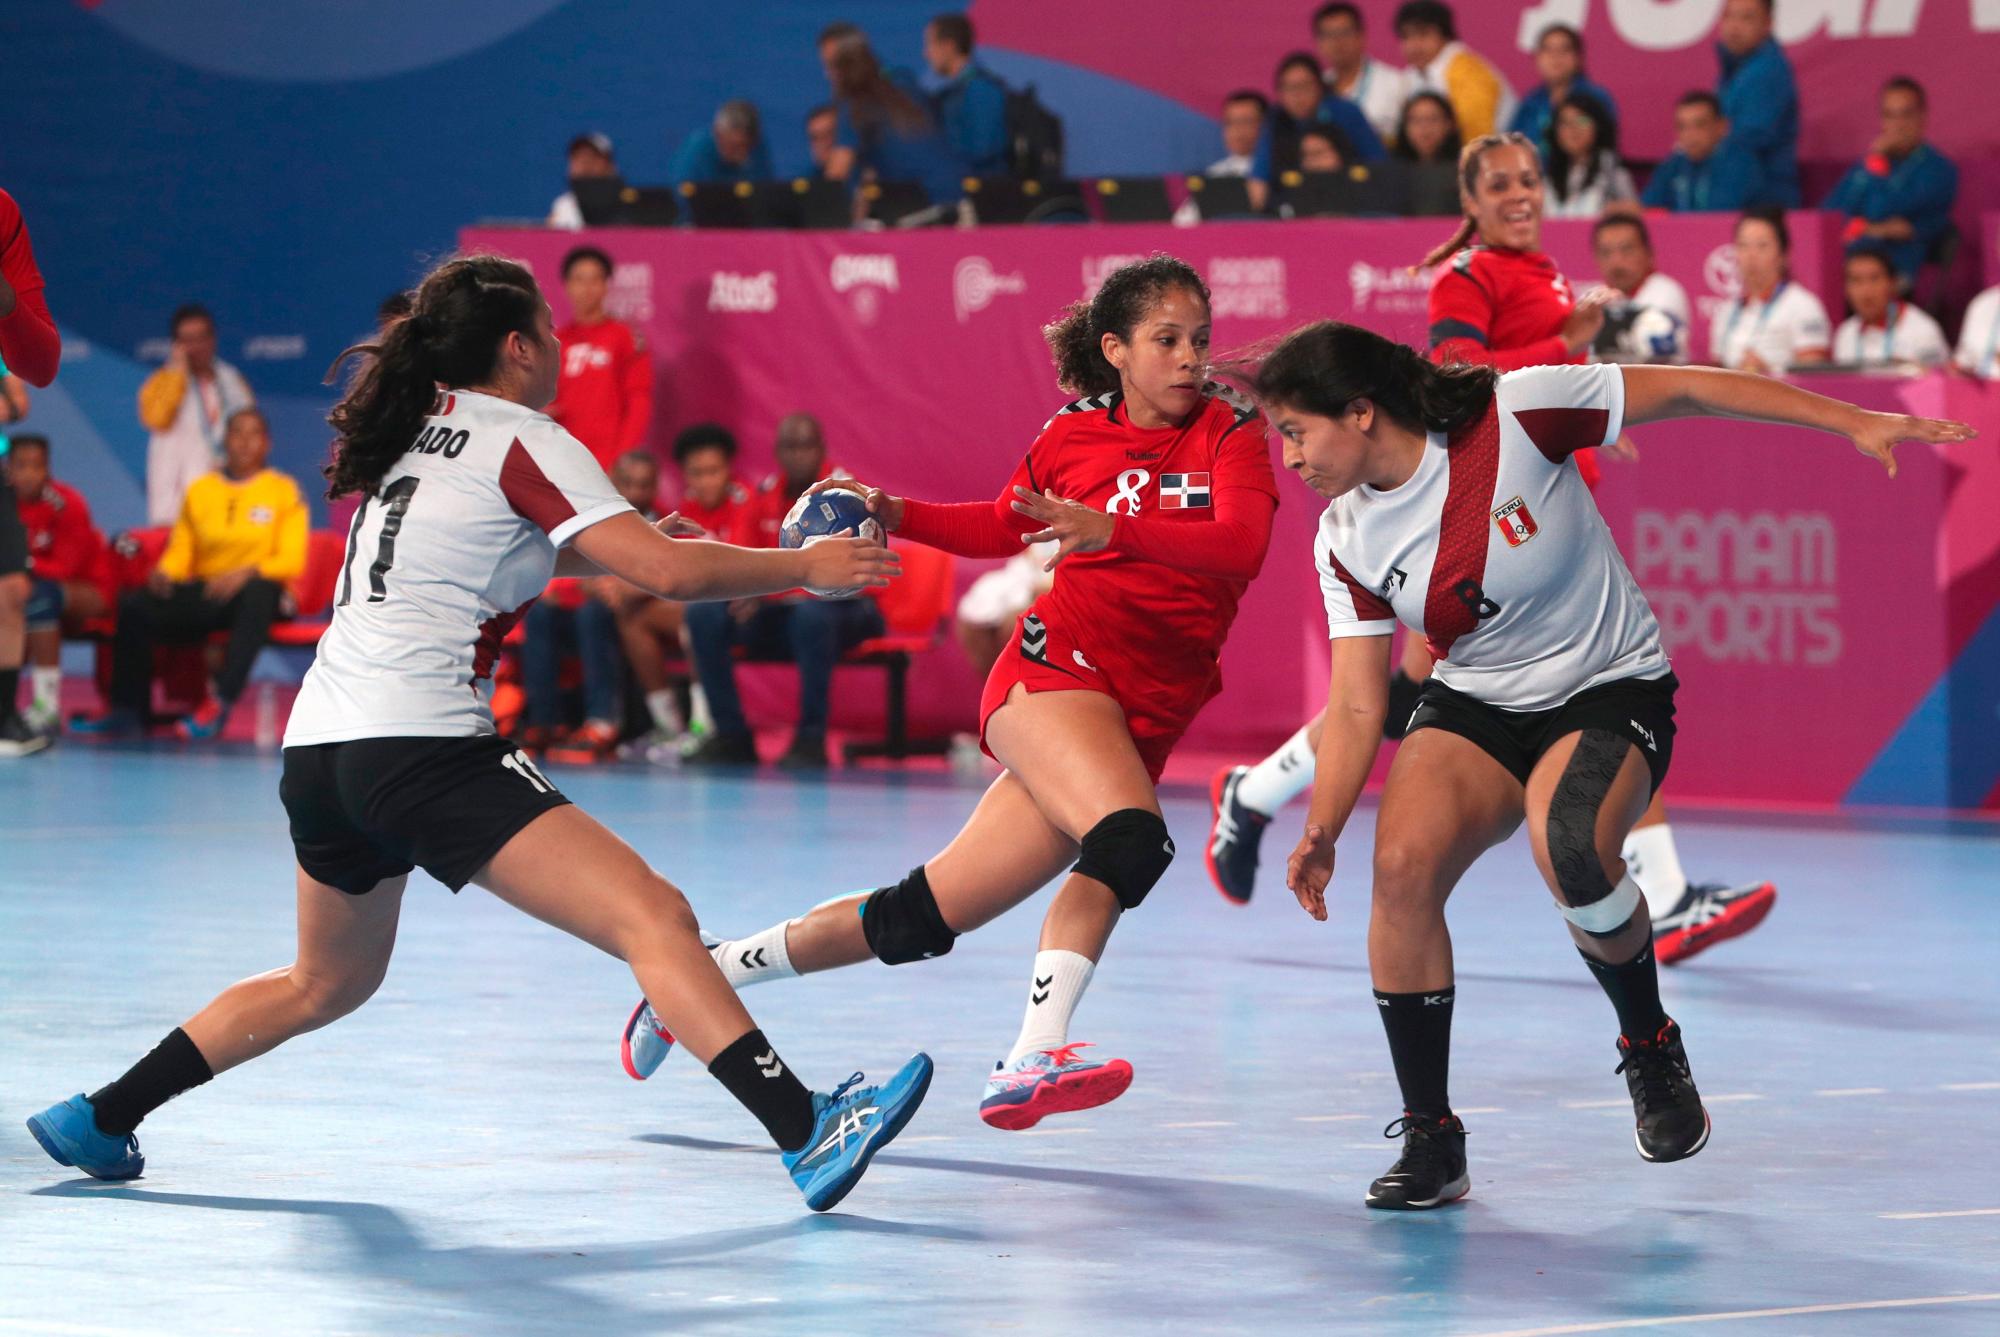 Nancy Peña (c) de Dominicana avanza frente a Camila Delgado (i) y Tifany Angulo (d) de Perú durante un partido de la ronda preliminar de balonmano femenino entre R.Dominicana y Perú en la primera jornada de los Juegos Panamericanos Lima 2019, en Lima (Perú). Los Juegos Panamericanos se disputarán del 26 de julio al 11 de agosto. 